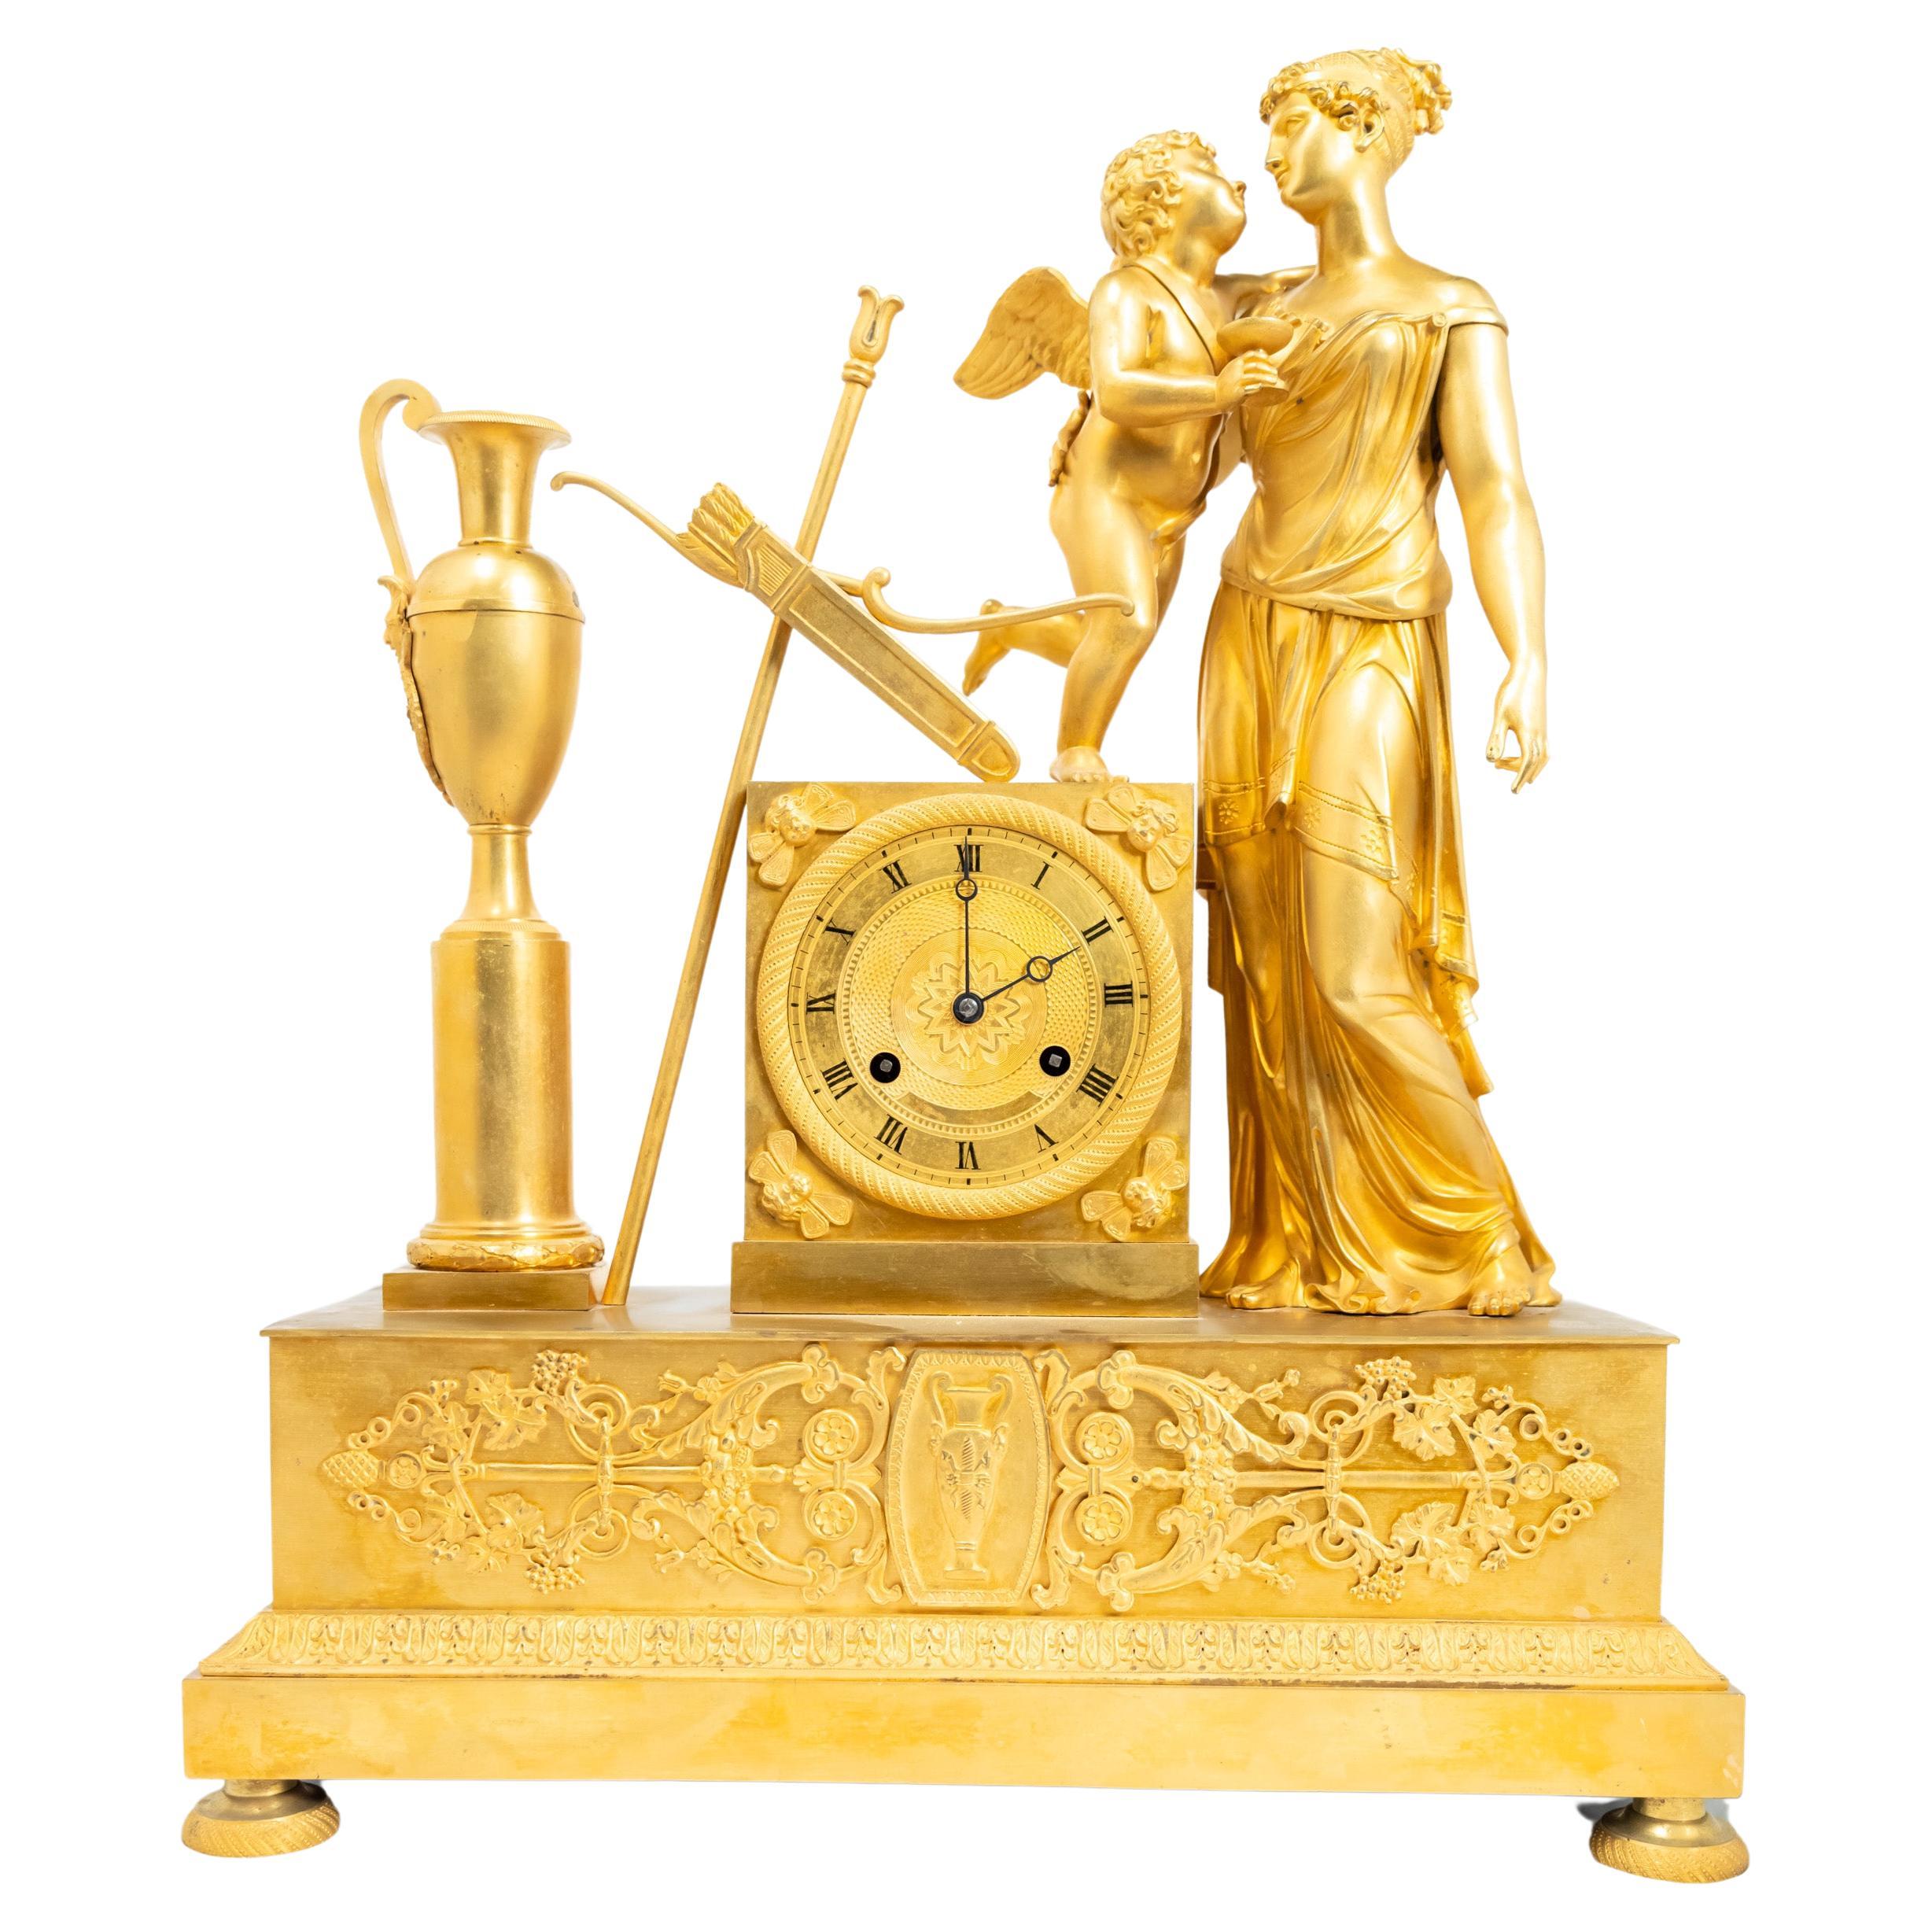 Feuervergoldete Manteluhr aus der Restaurationszeit mit Venus- und Amor-Figuren